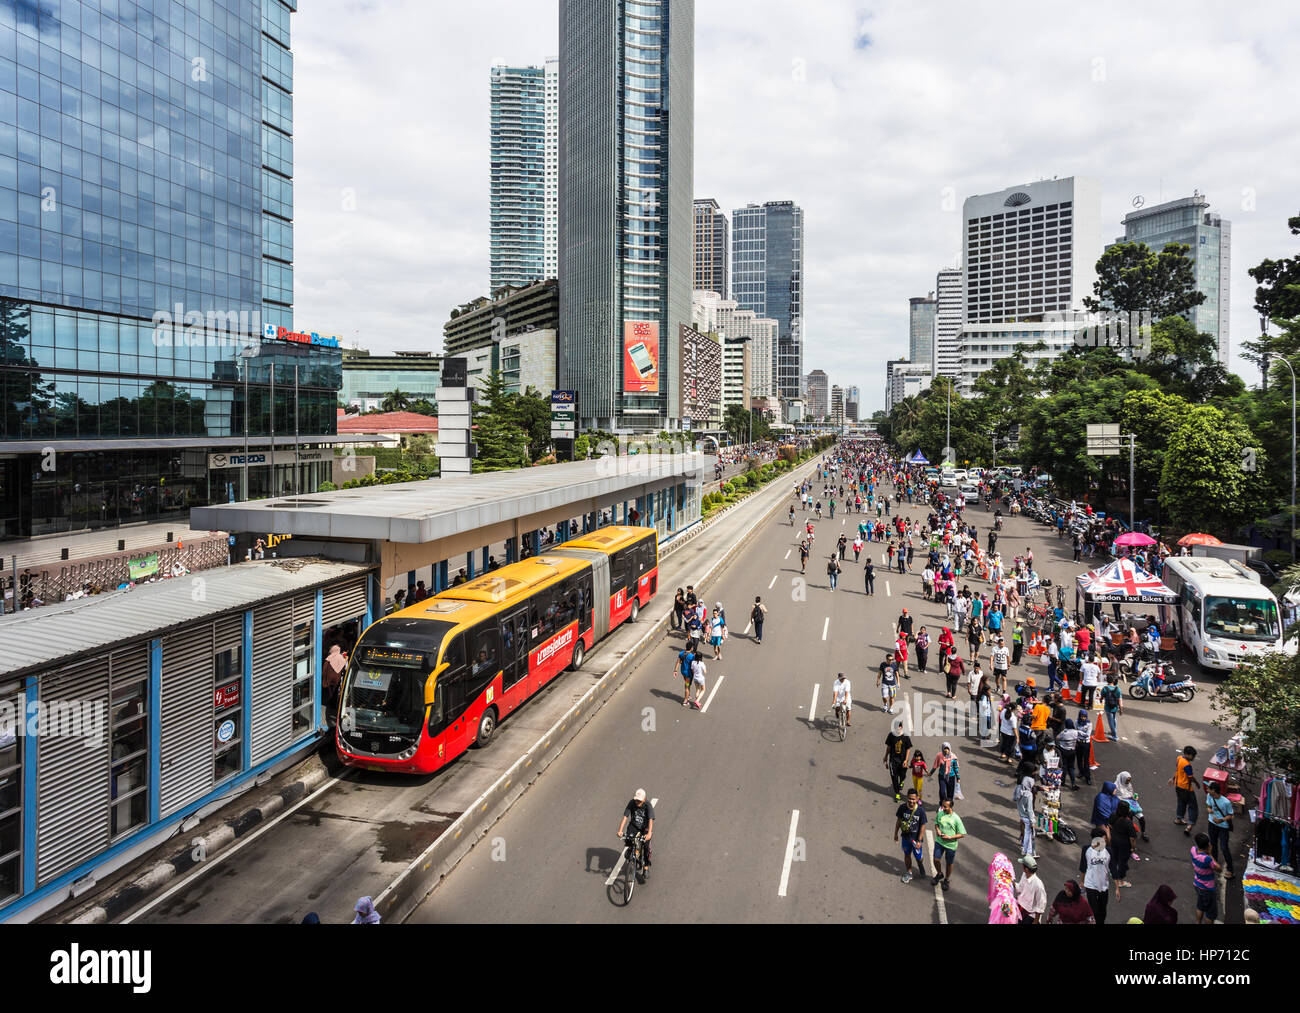 JAKARTA, Indonesien - 18. Dezember 2016: Man gerne outdoor-Aktivitäten wie Suppen, während die autofreie Tag statt jeden Sonntagmorgen in t Stockfoto